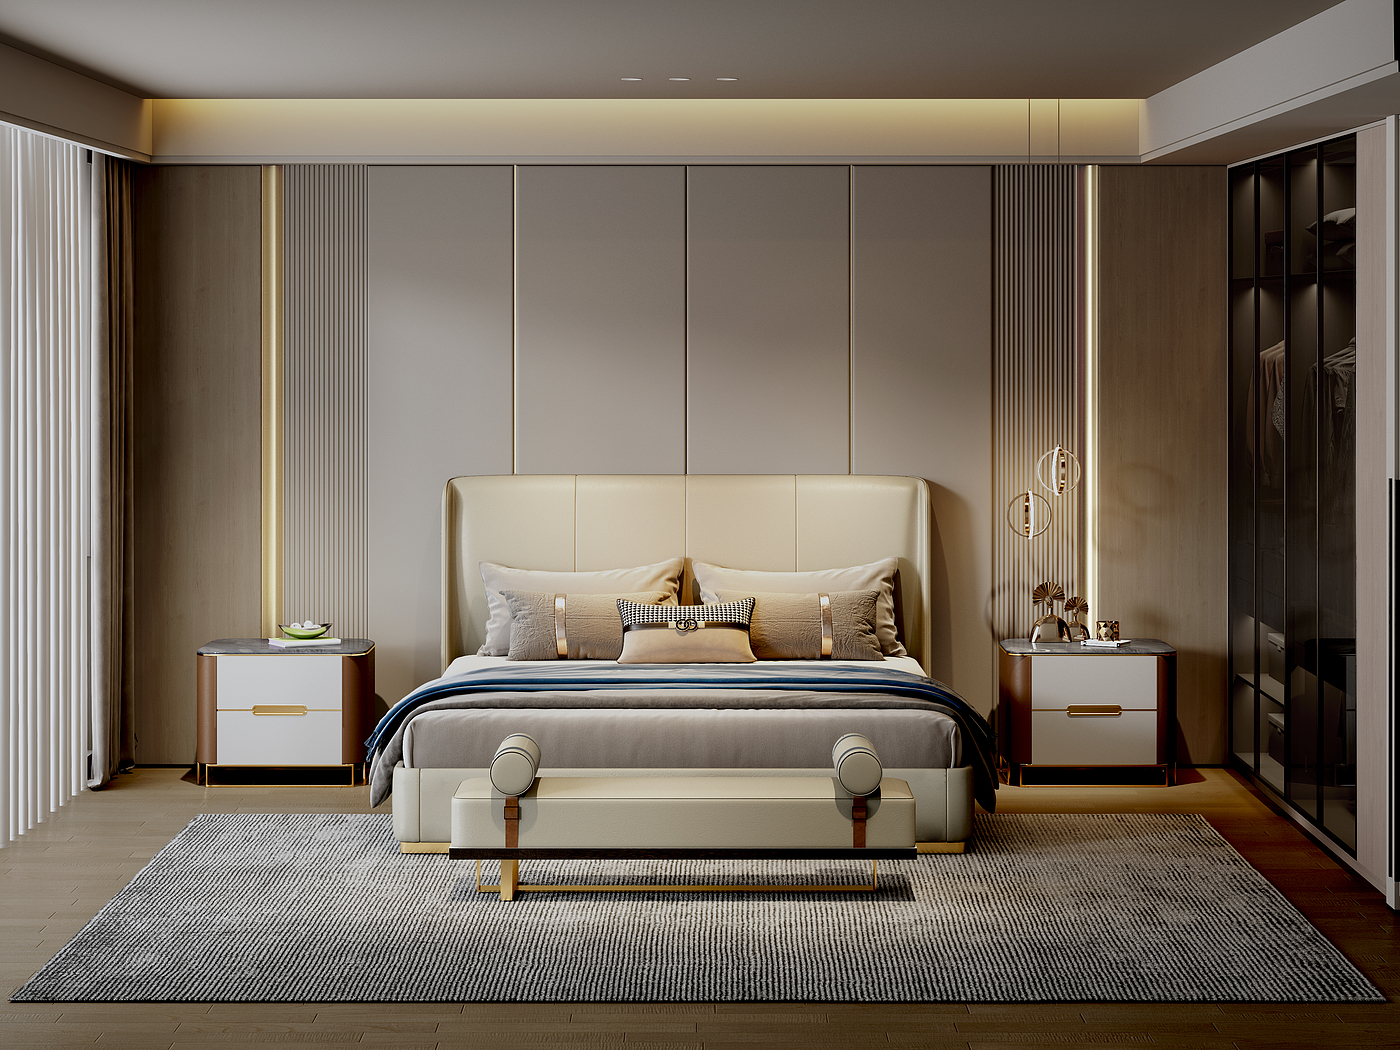 床，渲染，床头柜，卧室，产品设计，空间设计，